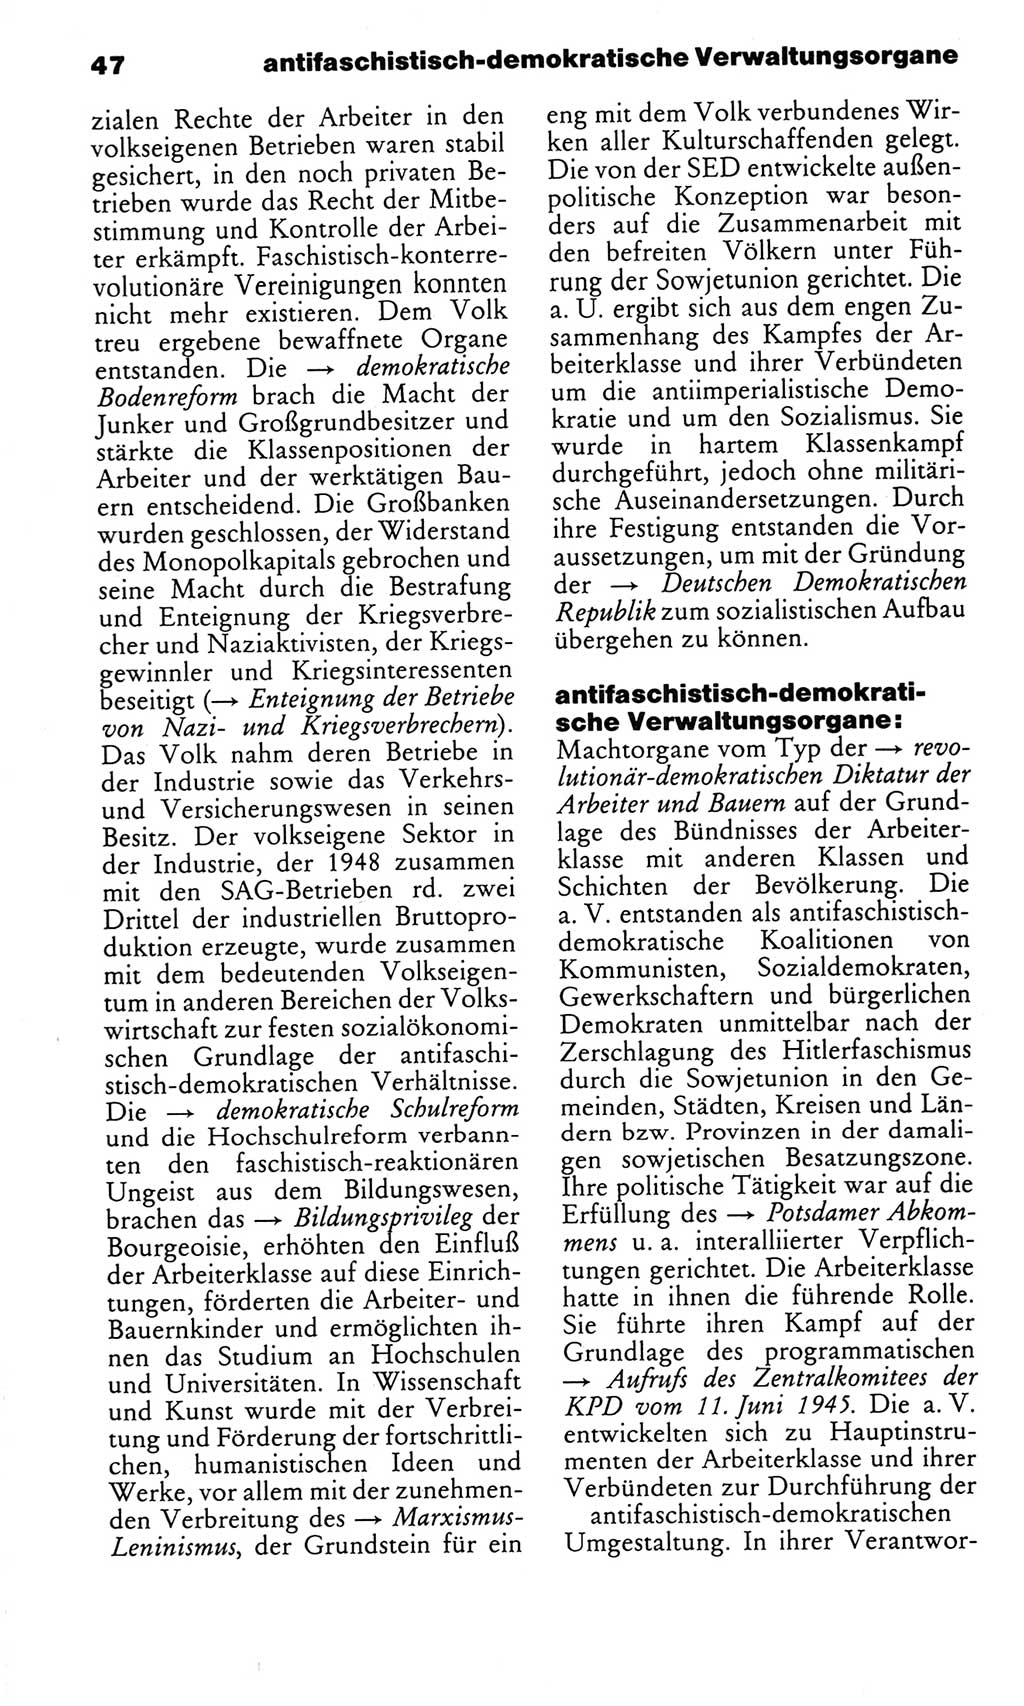 Kleines politisches Wörterbuch [Deutsche Demokratische Republik (DDR)] 1986, Seite 47 (Kl. pol. Wb. DDR 1986, S. 47)